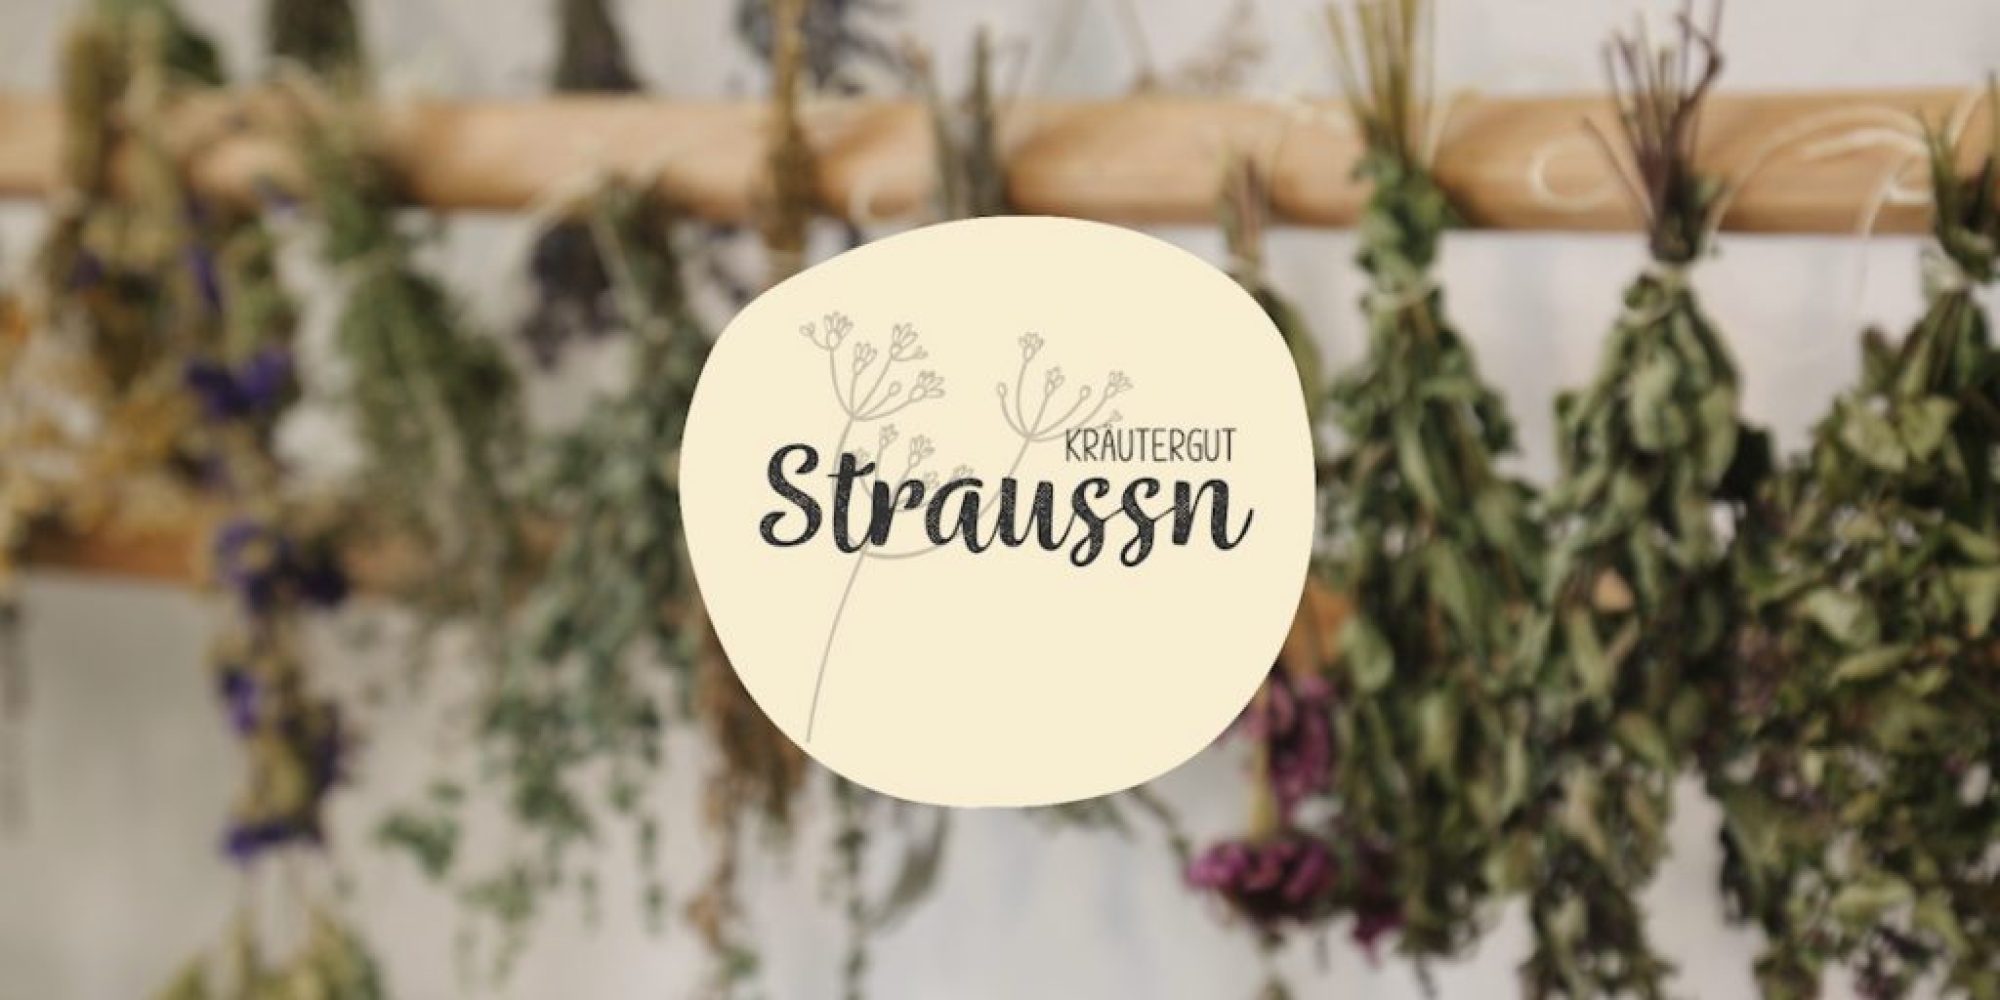 Straussn-Kra╠êutergut-1024x576